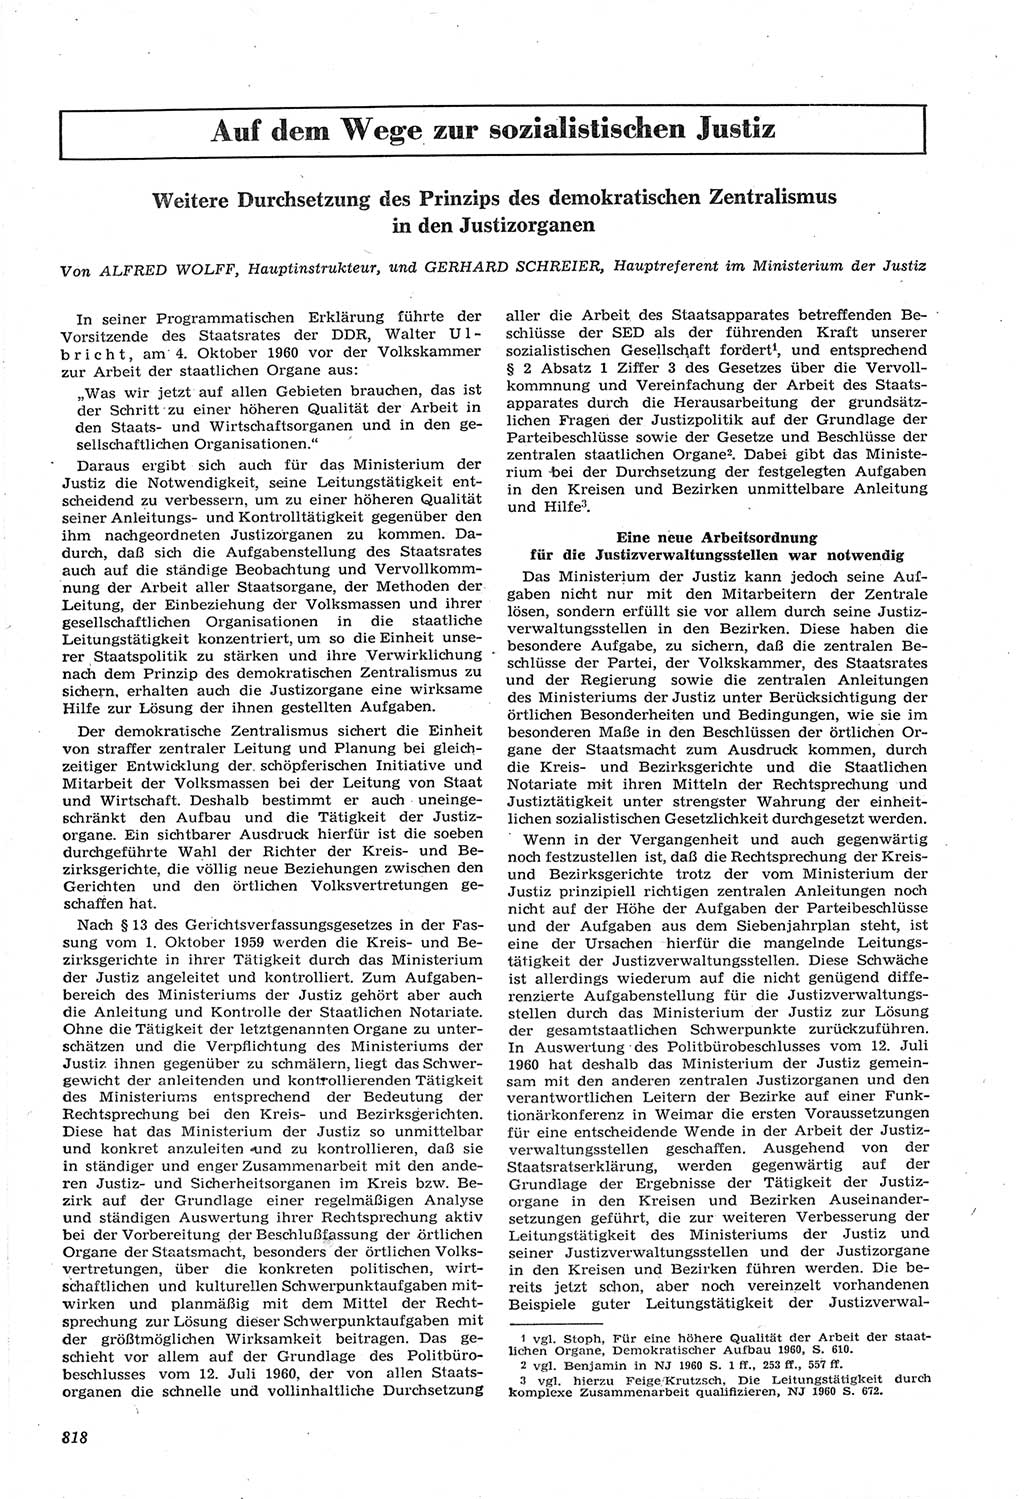 Neue Justiz (NJ), Zeitschrift für Recht und Rechtswissenschaft [Deutsche Demokratische Republik (DDR)], 14. Jahrgang 1960, Seite 818 (NJ DDR 1960, S. 818)